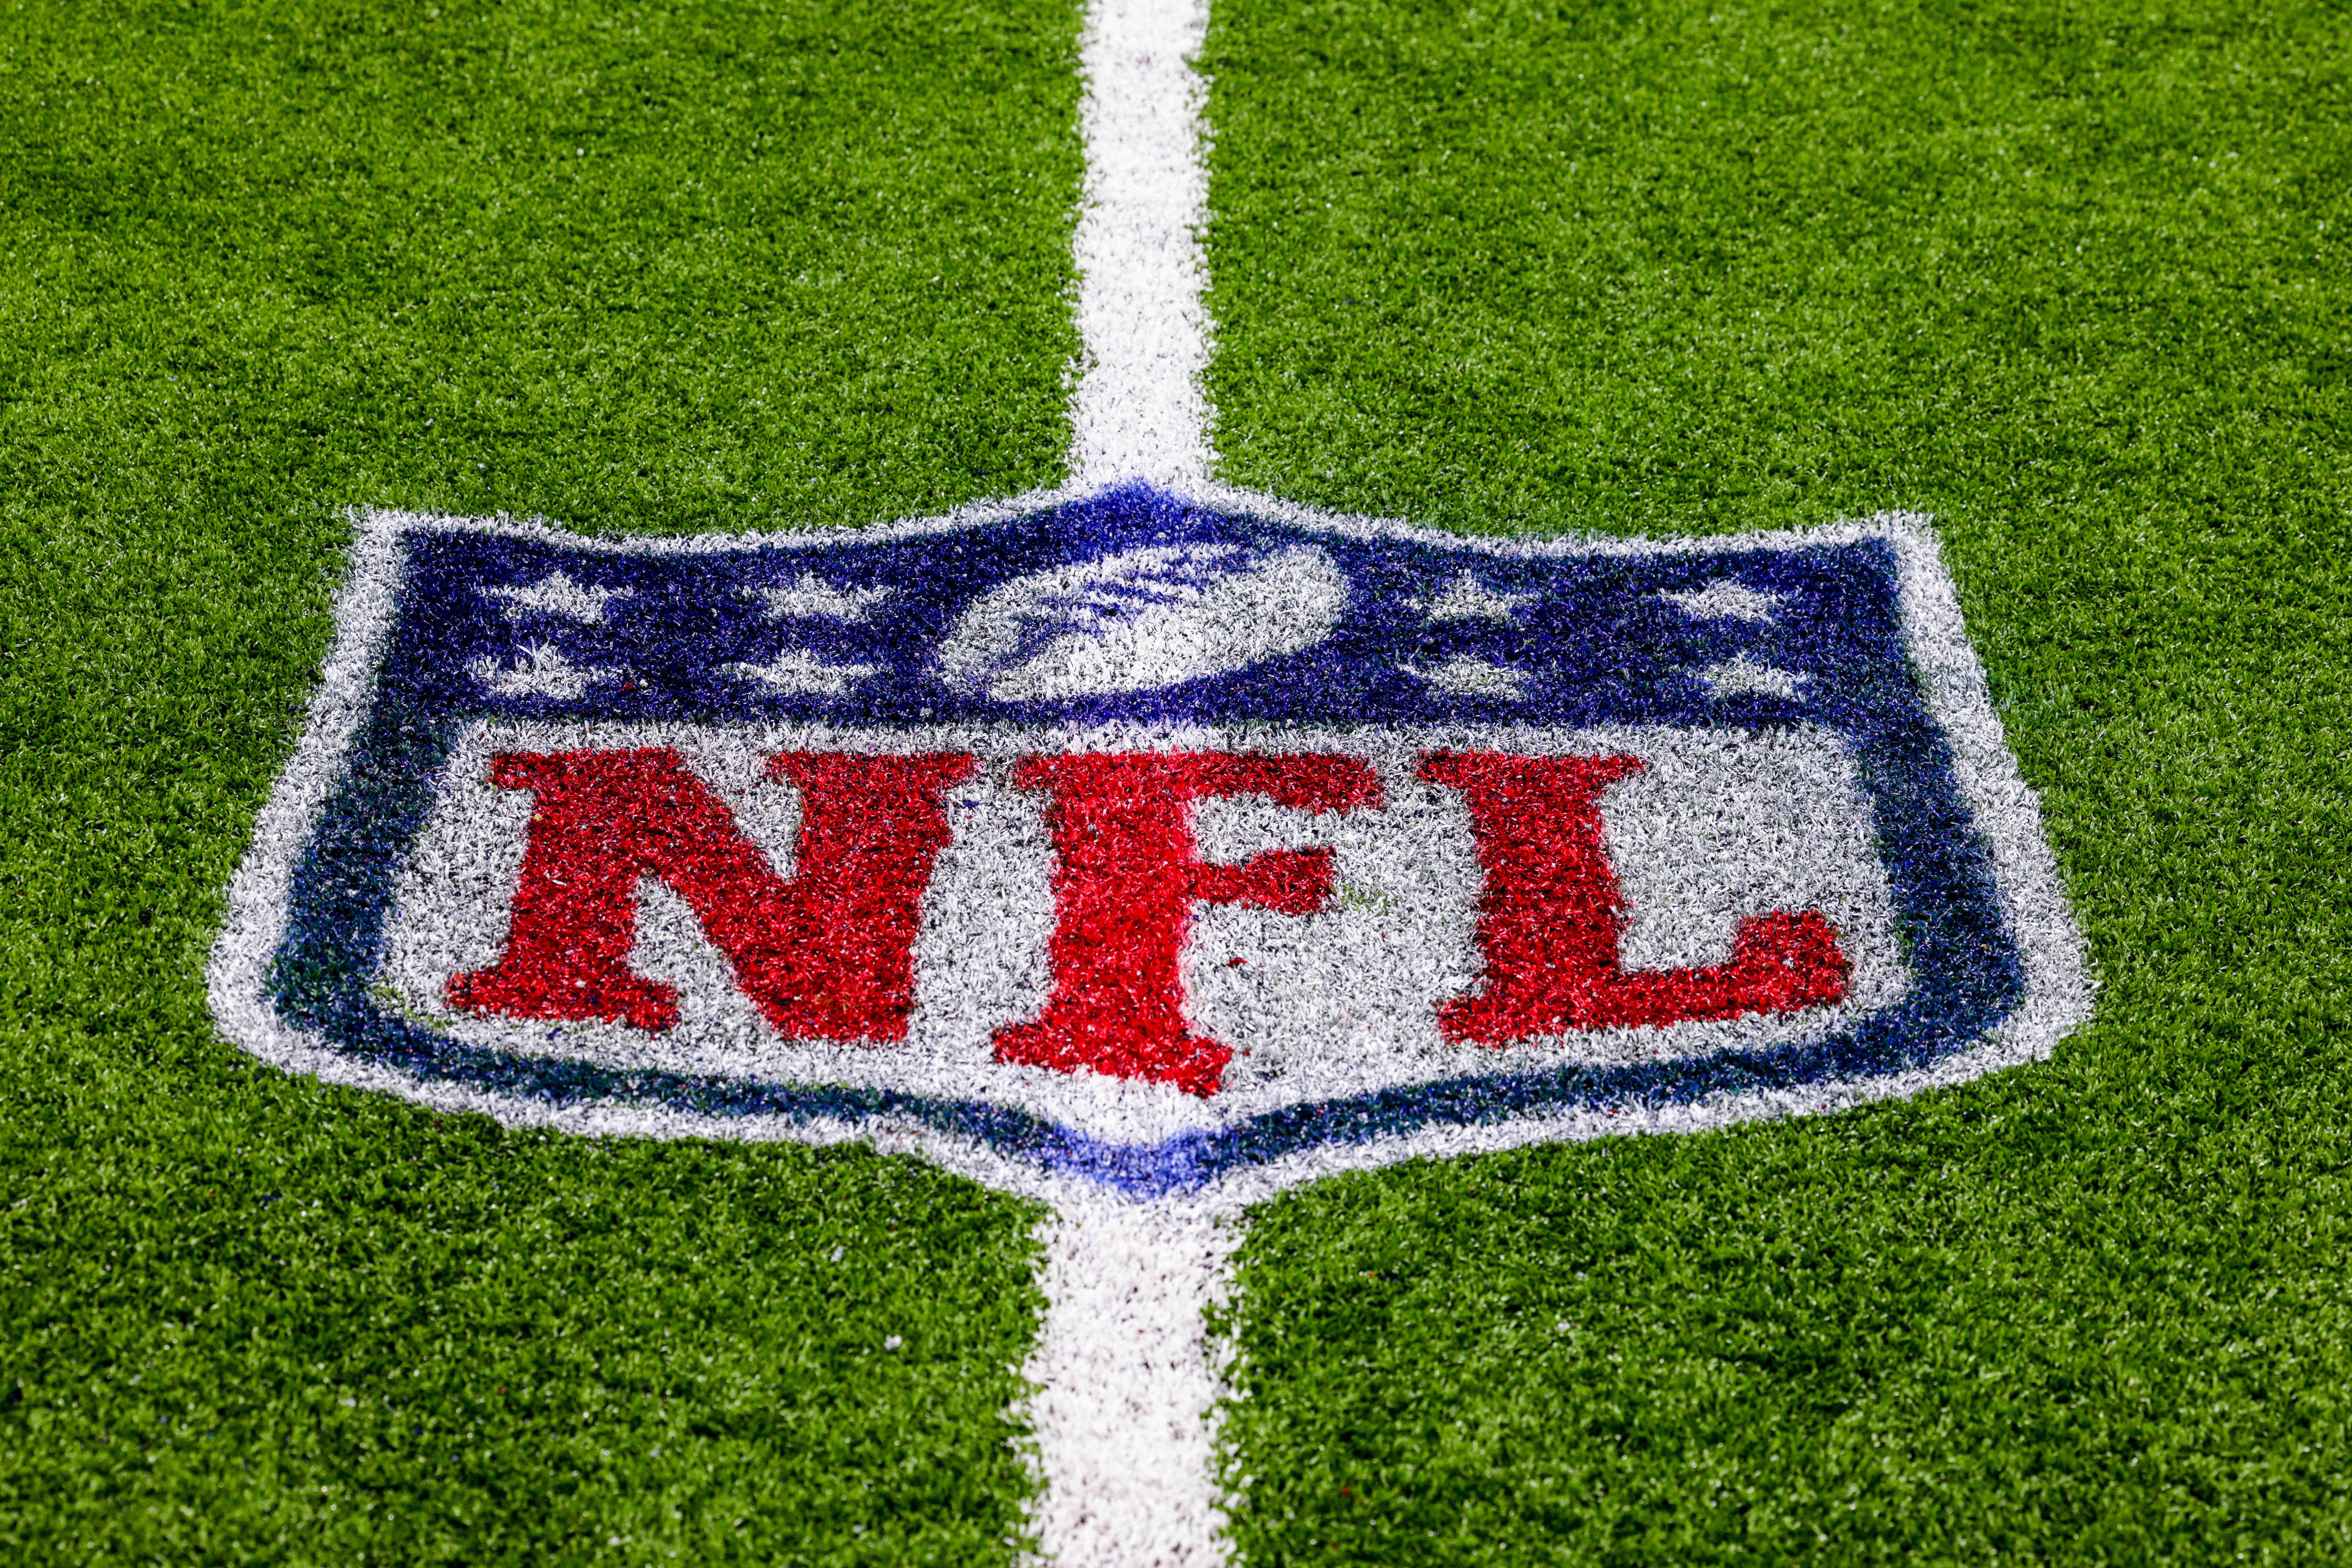 La NFL apunta a España, Francia y Brasil como sedes de futuros partidos internacionales